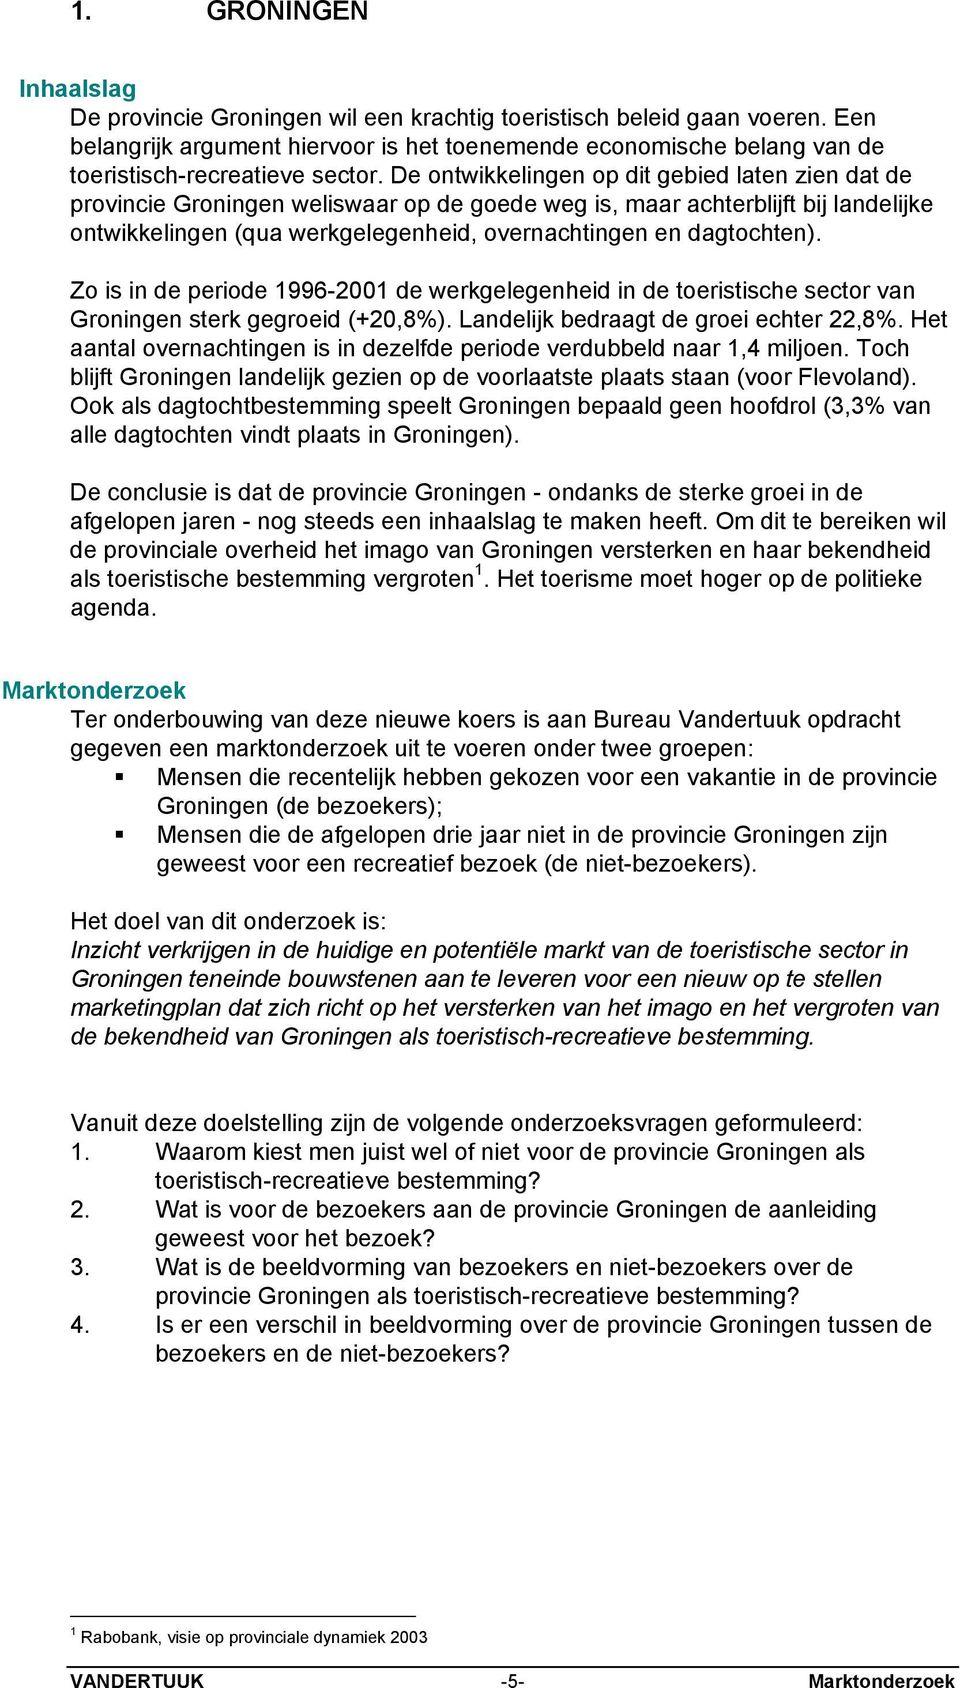 De ontwikkelingen op dit gebied laten zien dat de provincie Groningen weliswaar op de goede weg is, maar achterblijft bij landelijke ontwikkelingen (qua werkgelegenheid, overnachtingen en dagtochten).